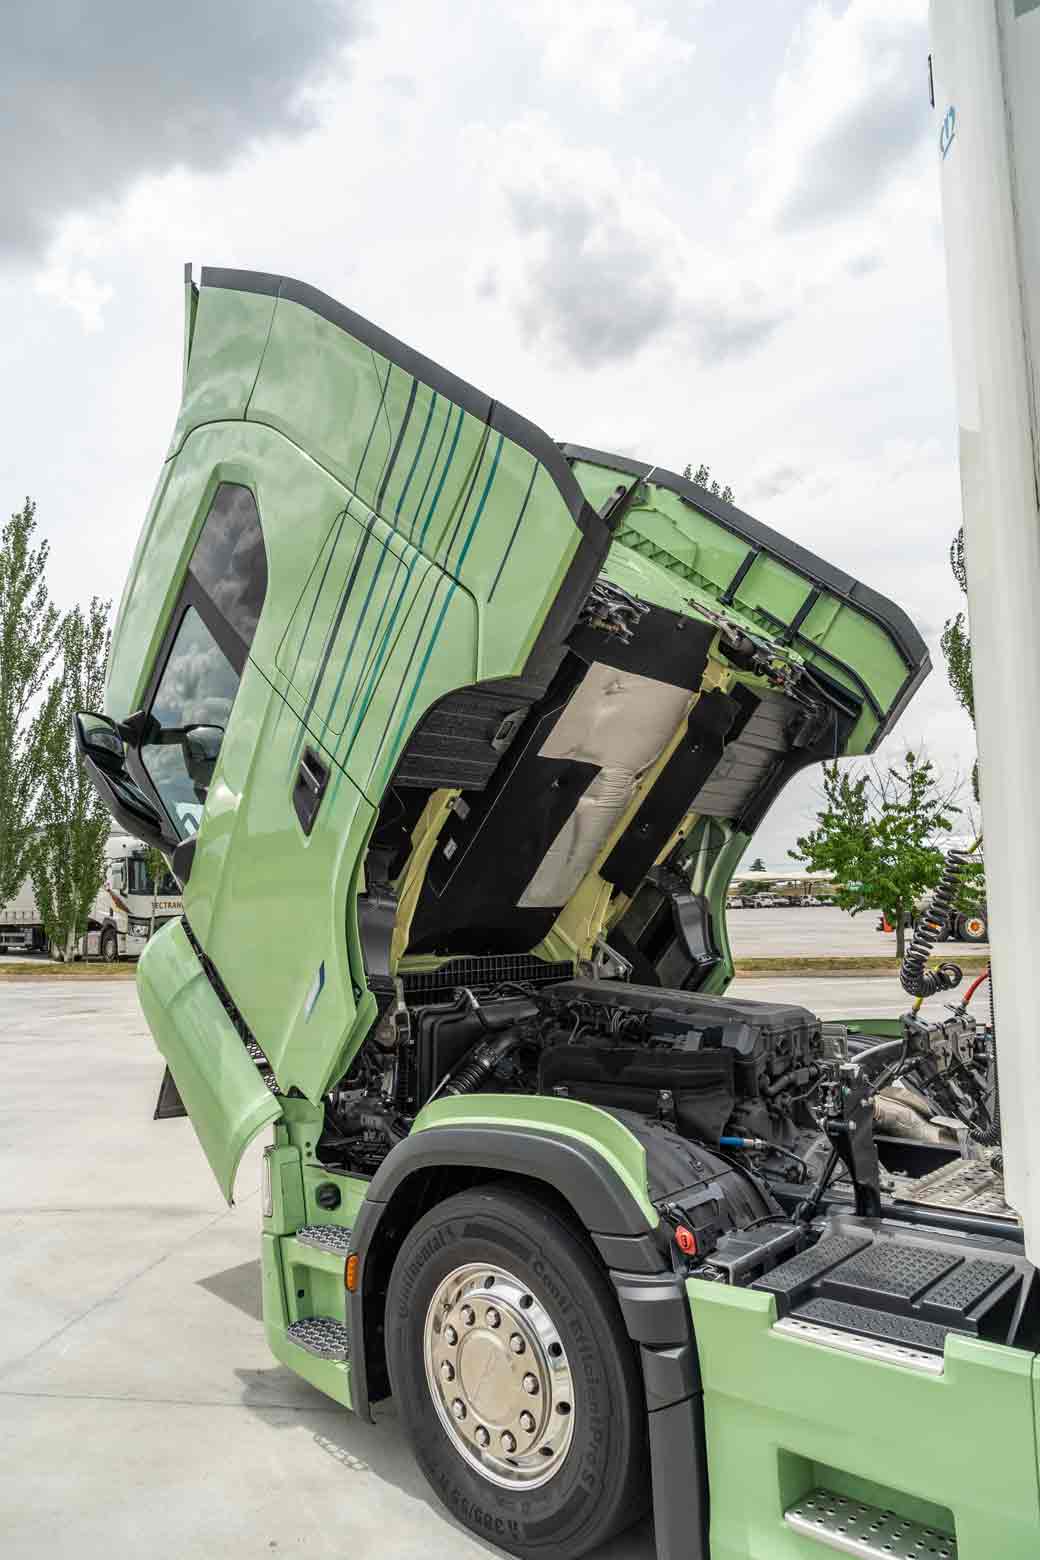 El motor del Scania Super S 500 está marcado por sus 500 CV a 1800rpm, 2645 Nm de par motor máximo desde 900 hasta 1320 rpm y el sistema TwinSCR de doble inyección de Adblue.